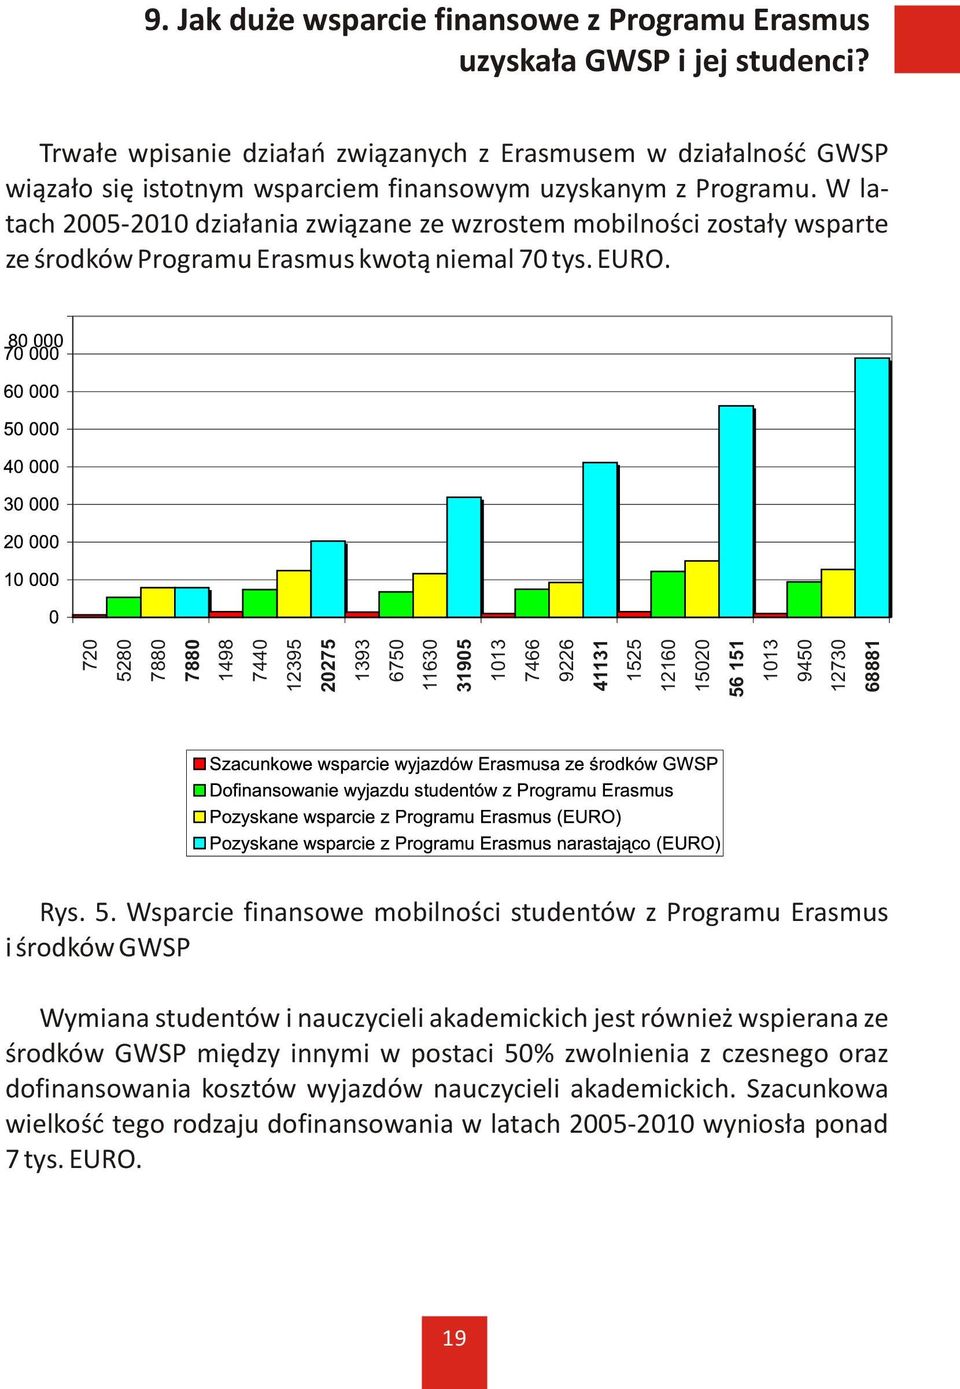 W latach 2005-2010 dzia³ania zwi¹zane ze wzrostem mobilnoœci zosta³y wsparte ze œrodków Programu Erasmus kwot¹ niemal 70 tys. EURO.